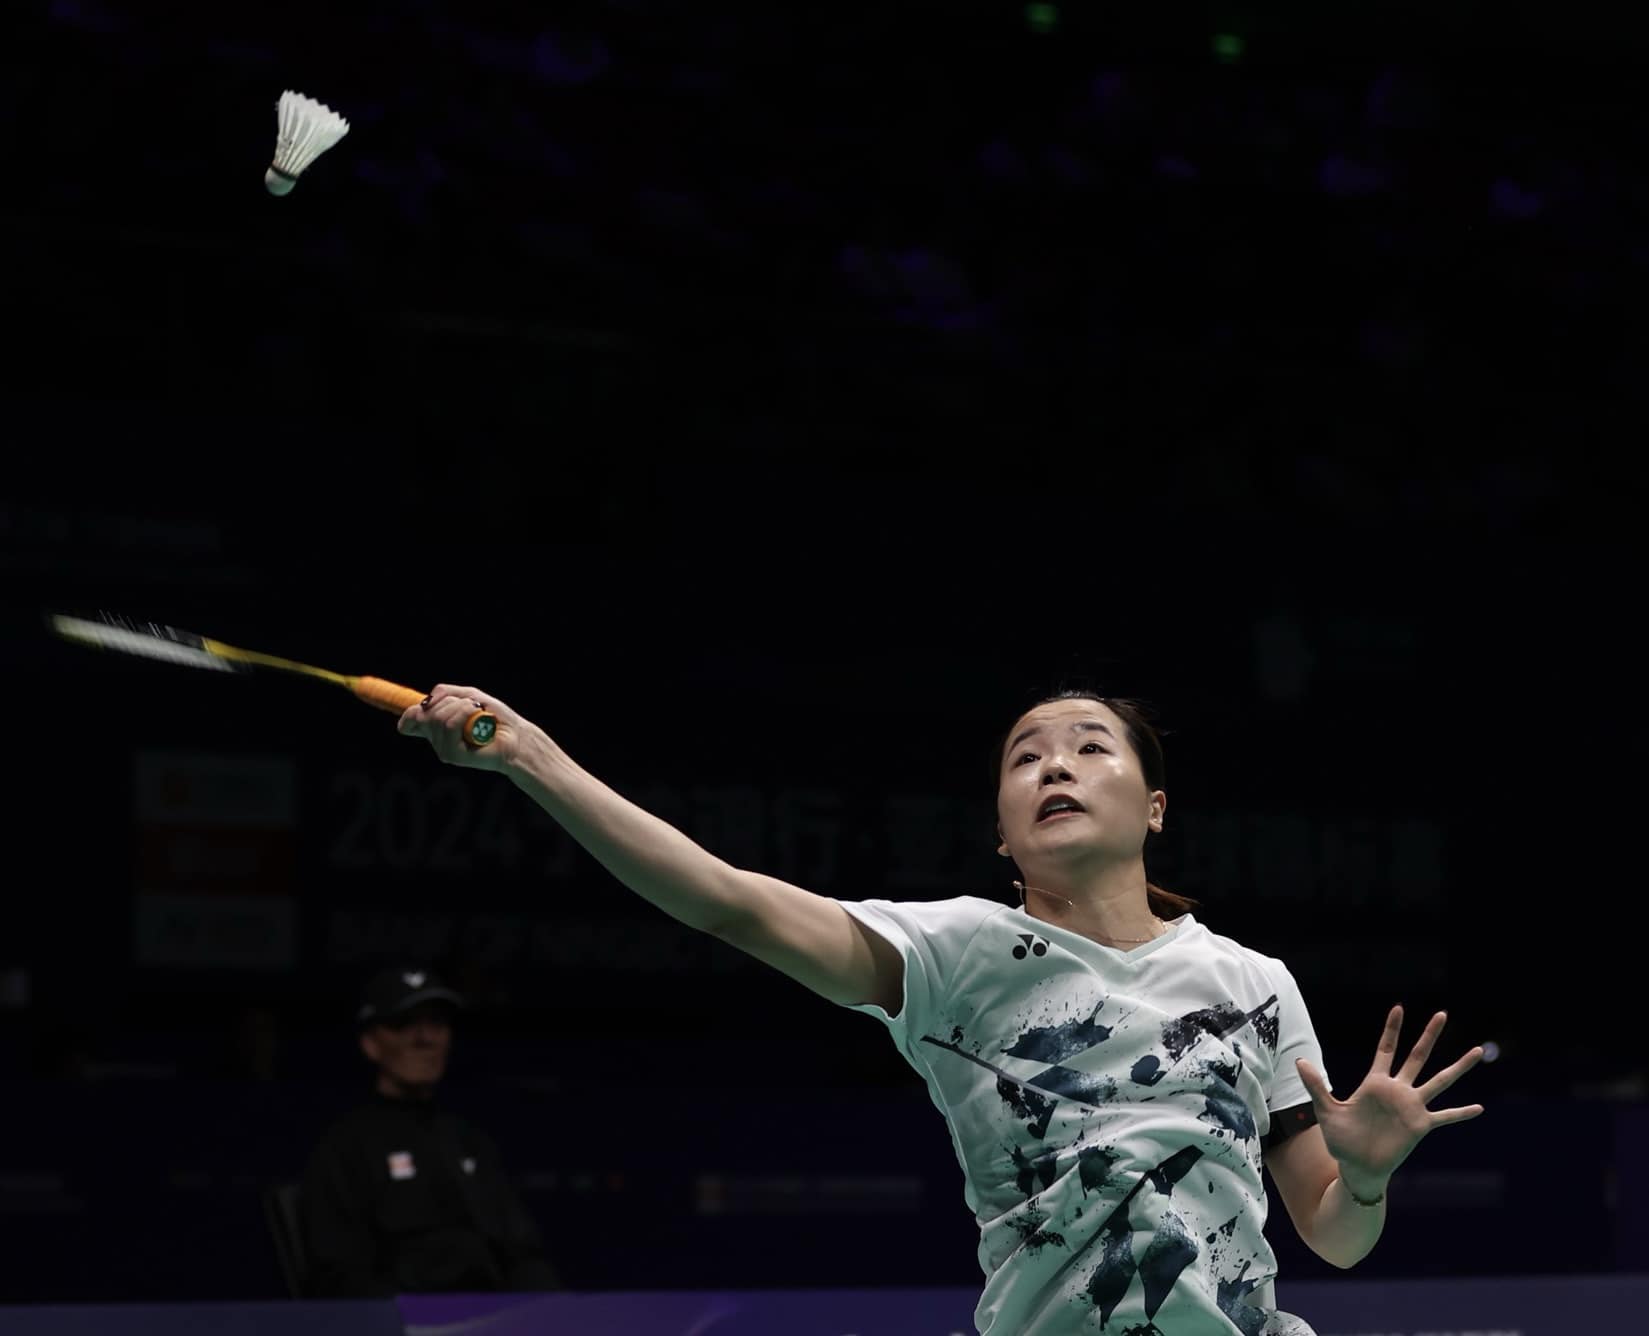 Tay vợt Nguyễn Thùy Linh kể chuyện “một mình 3 va li” du đấu châu Âu giành vé dự Olympic Paris 2024- Ảnh 5.